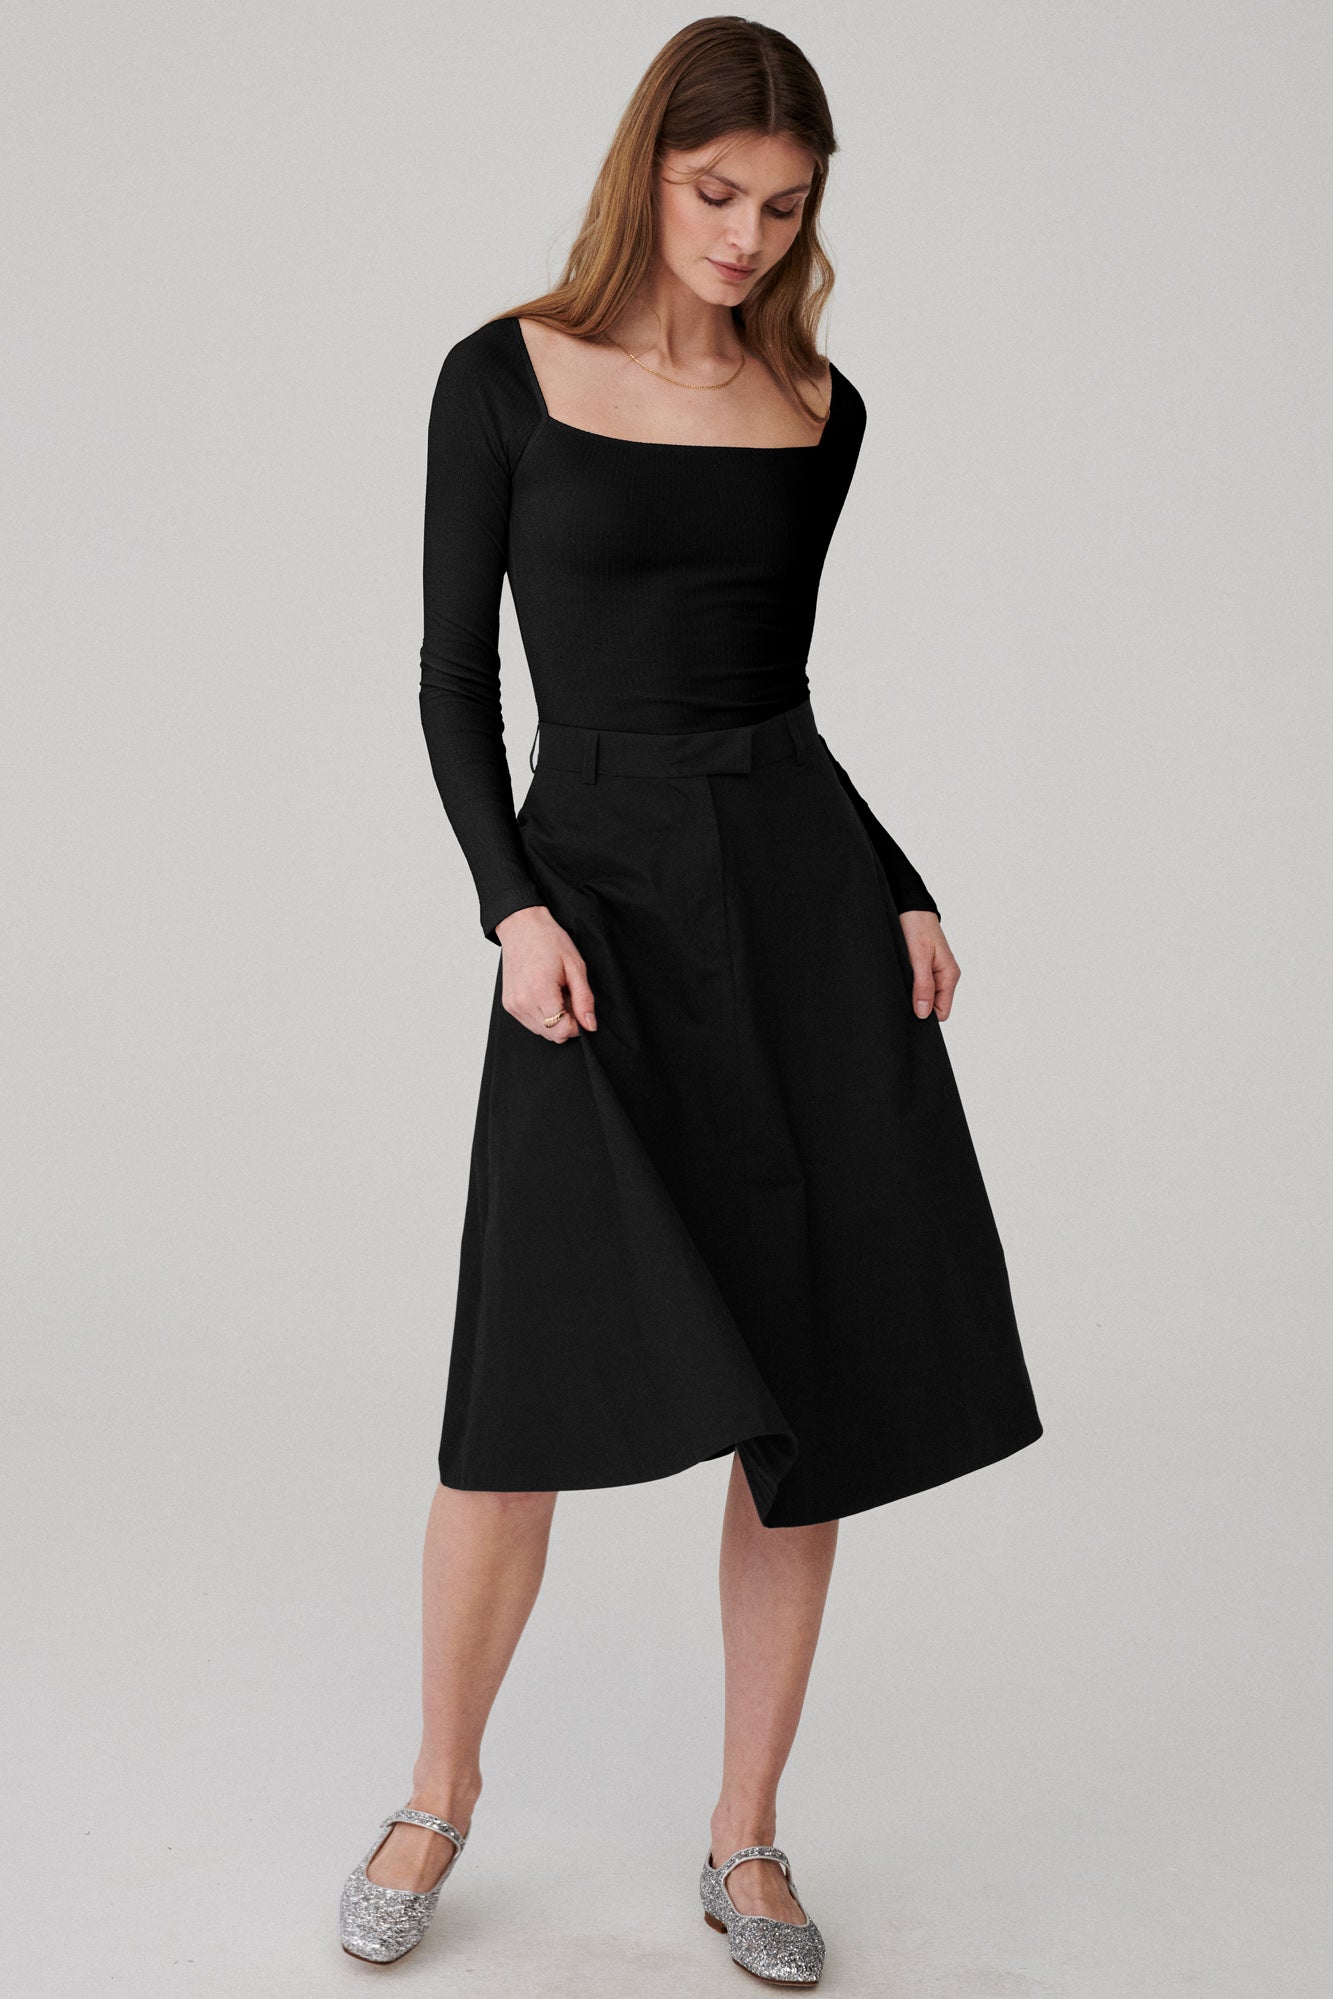 Skirt in organic cotton / 07 / 06 / onyx black *bodysuit-in-organic-cotton-01-03-onyx-black* ?The model is 177 cm high and wears size S?